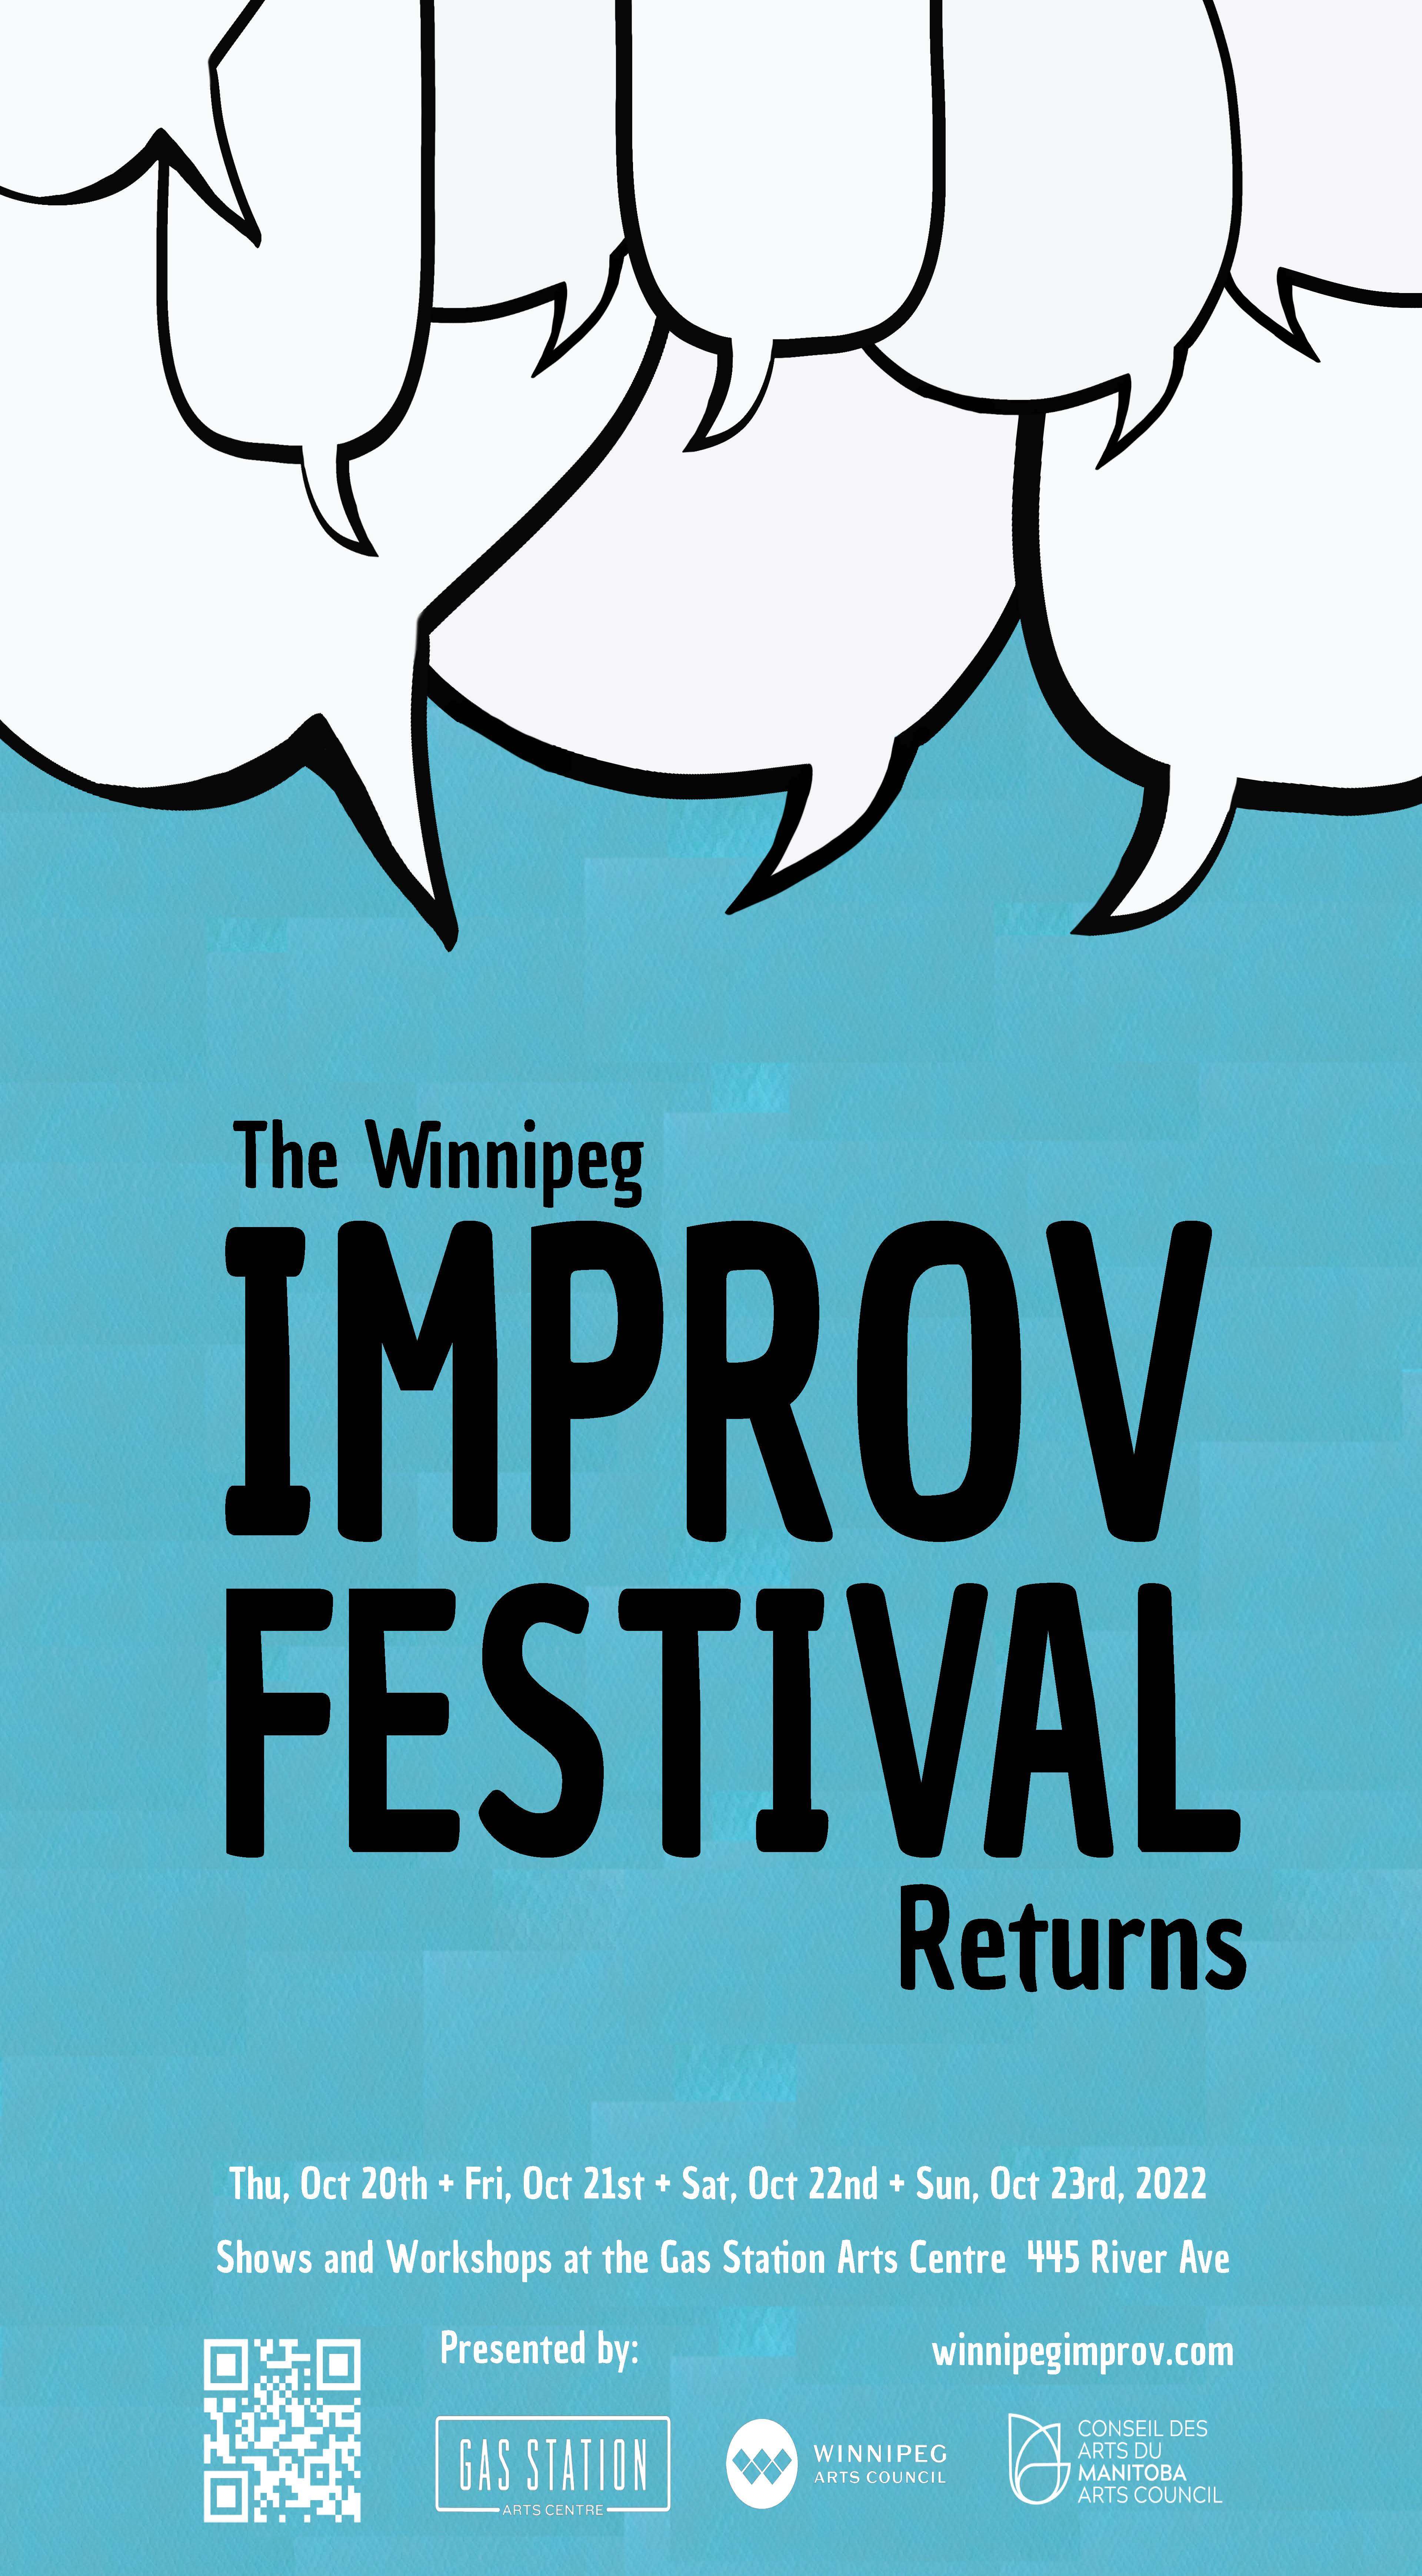 The Winnipeg Improv Festival Returns!